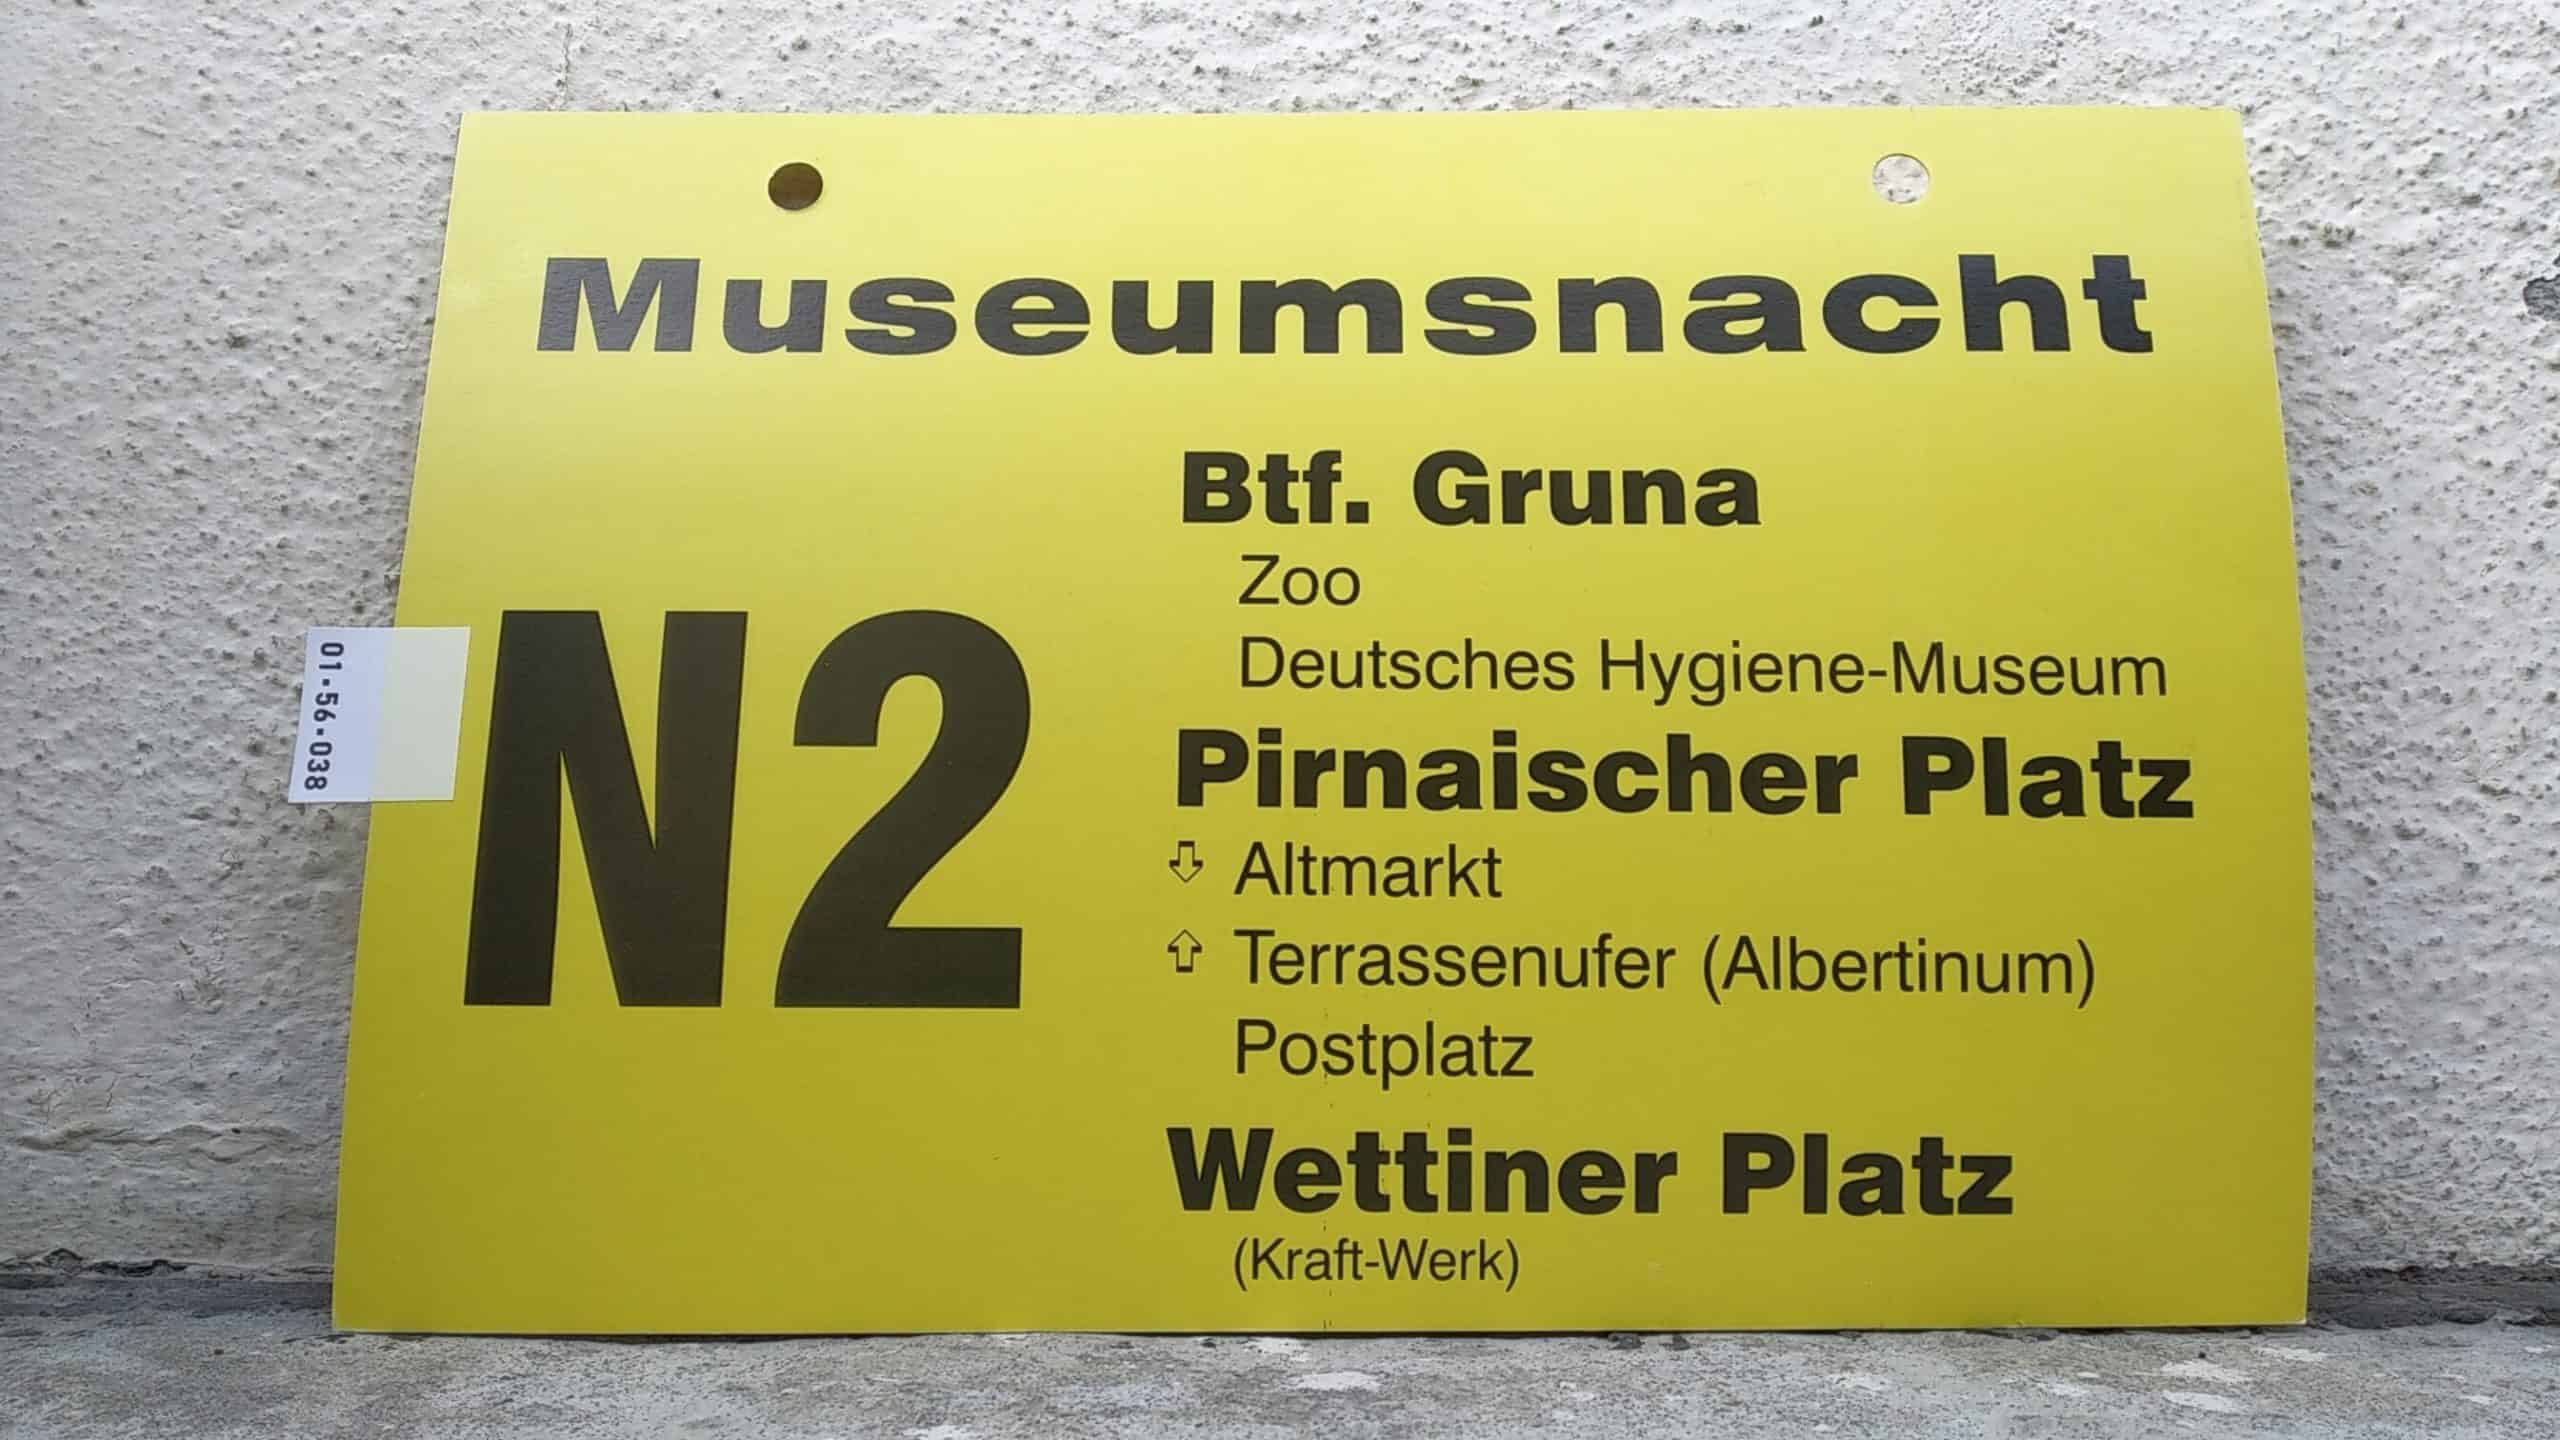 Ein seltenes Bus-Linienschild aus Dresden, anläßlich Museumsnacht N2 Btf. Gruna - Wettiner Platz Kraft-Werk